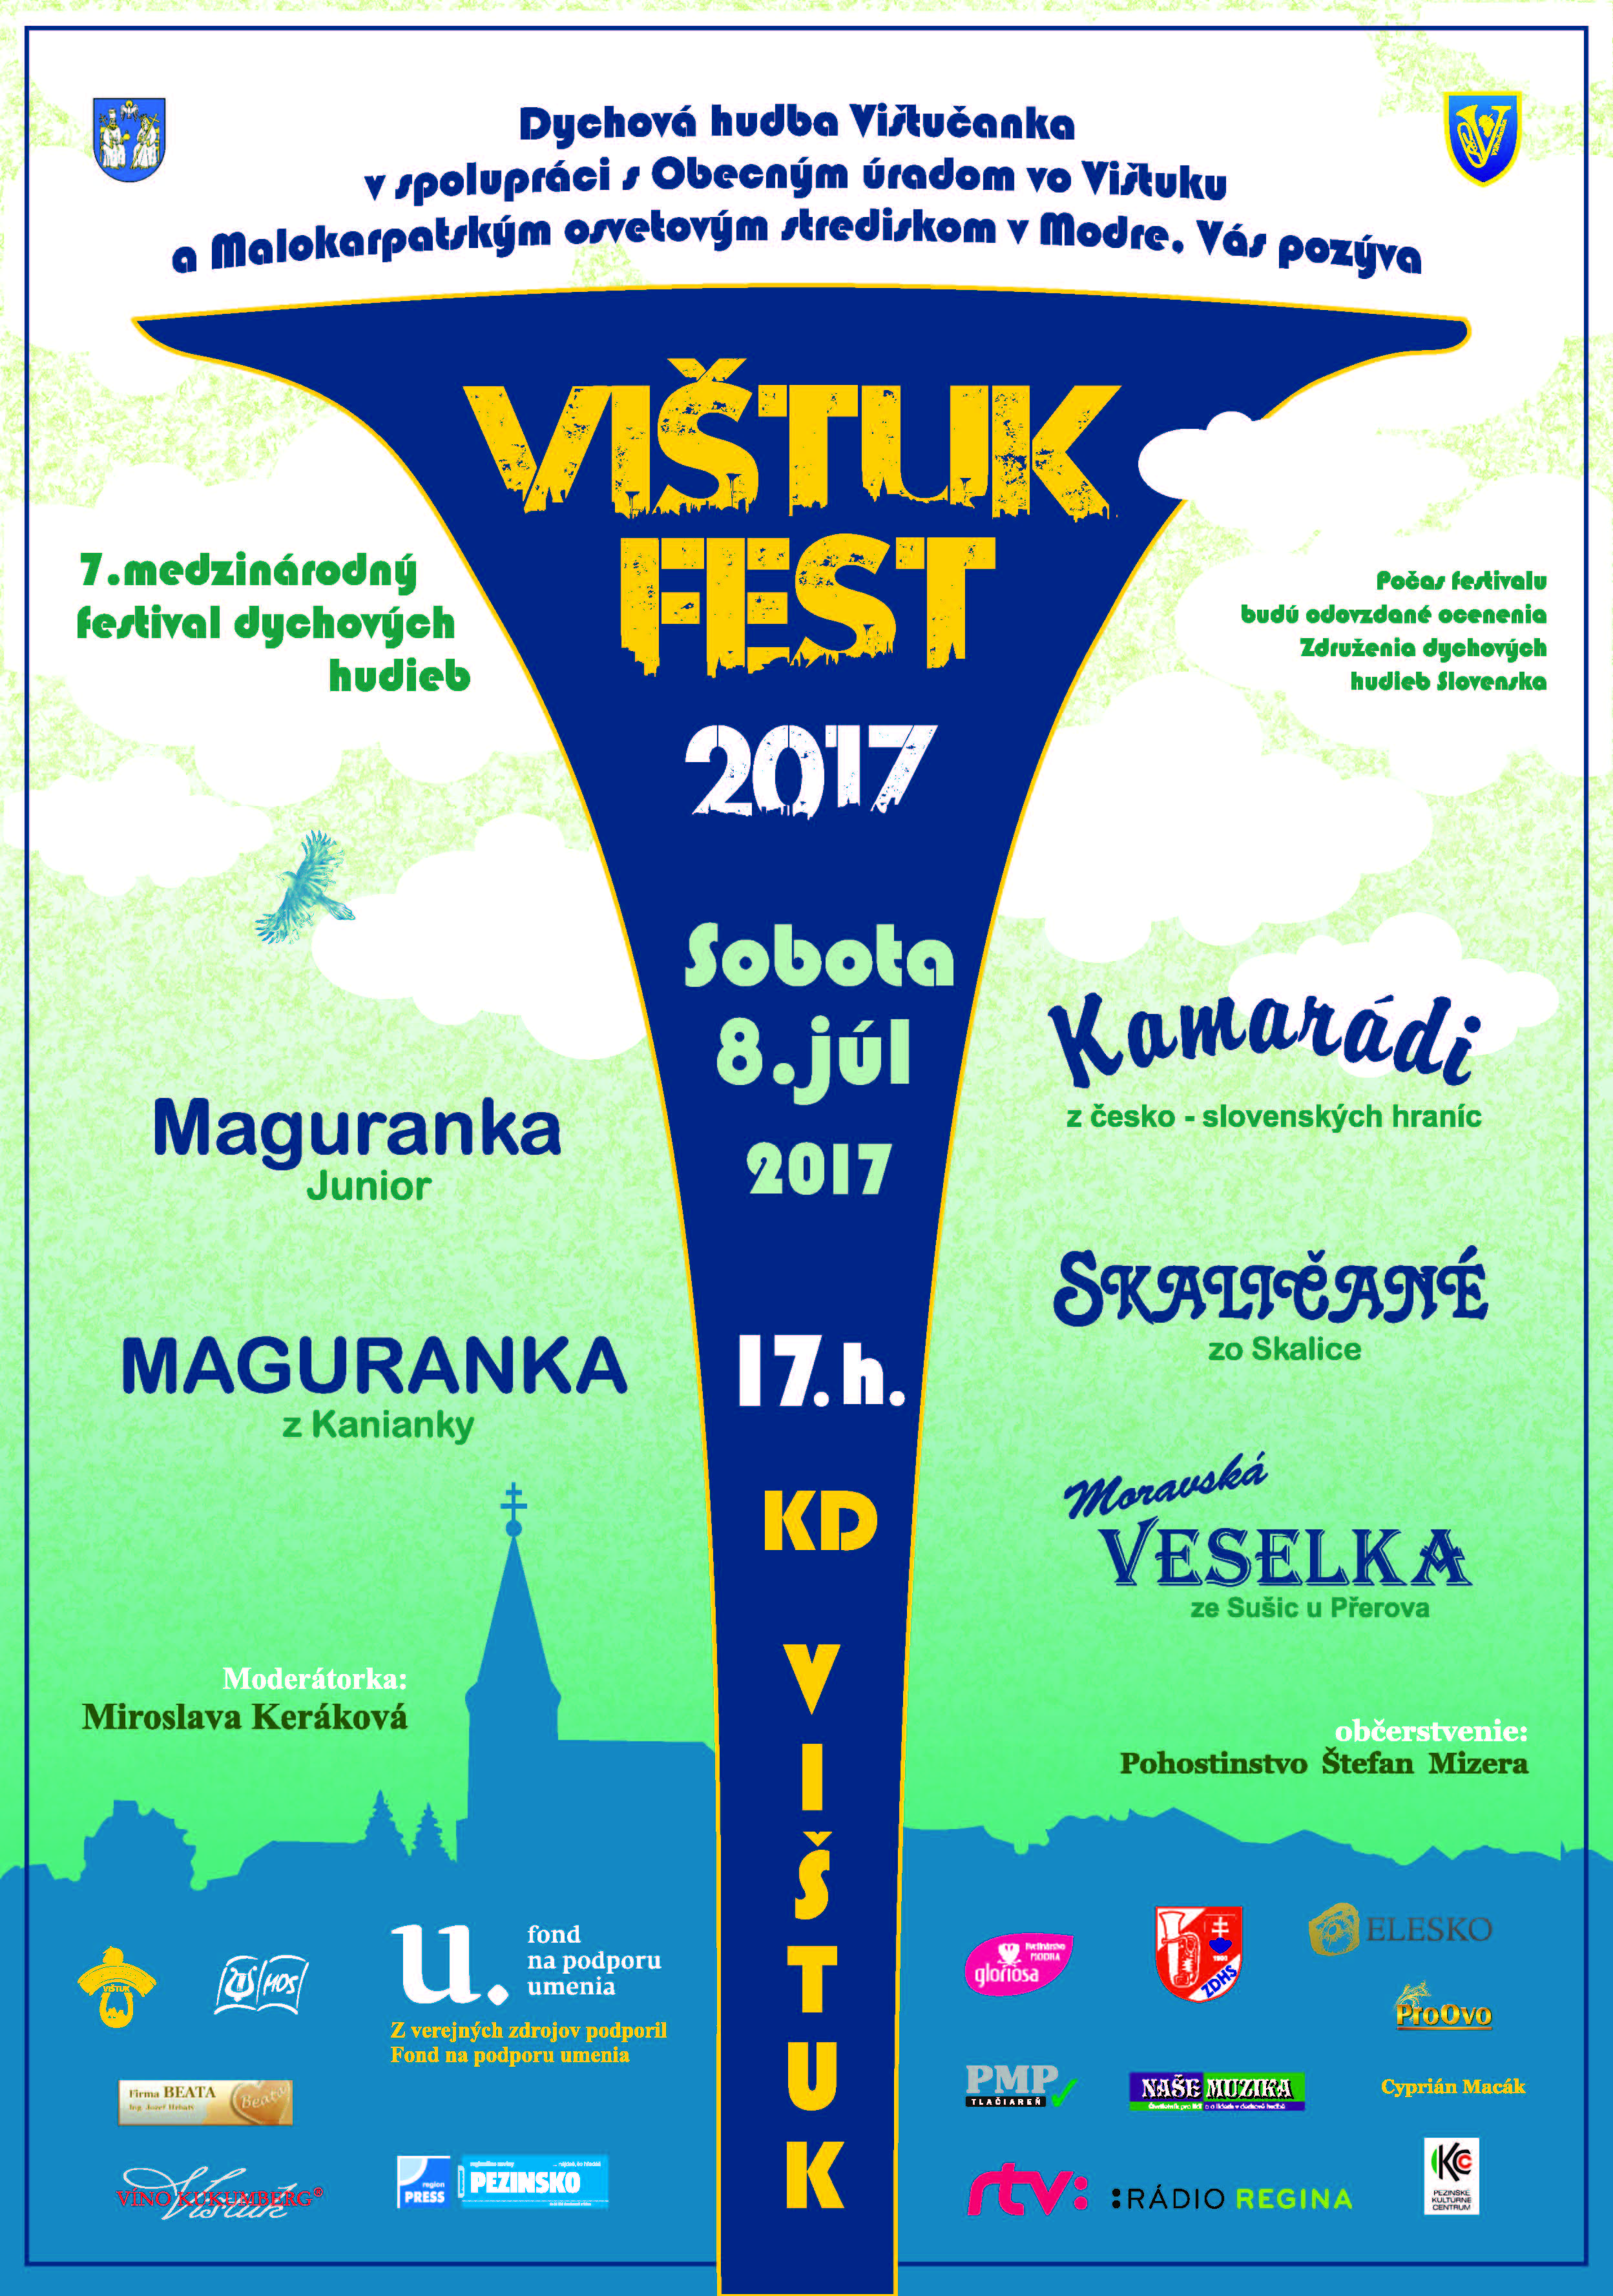 VITUKFEST 2017 - 7. ronk